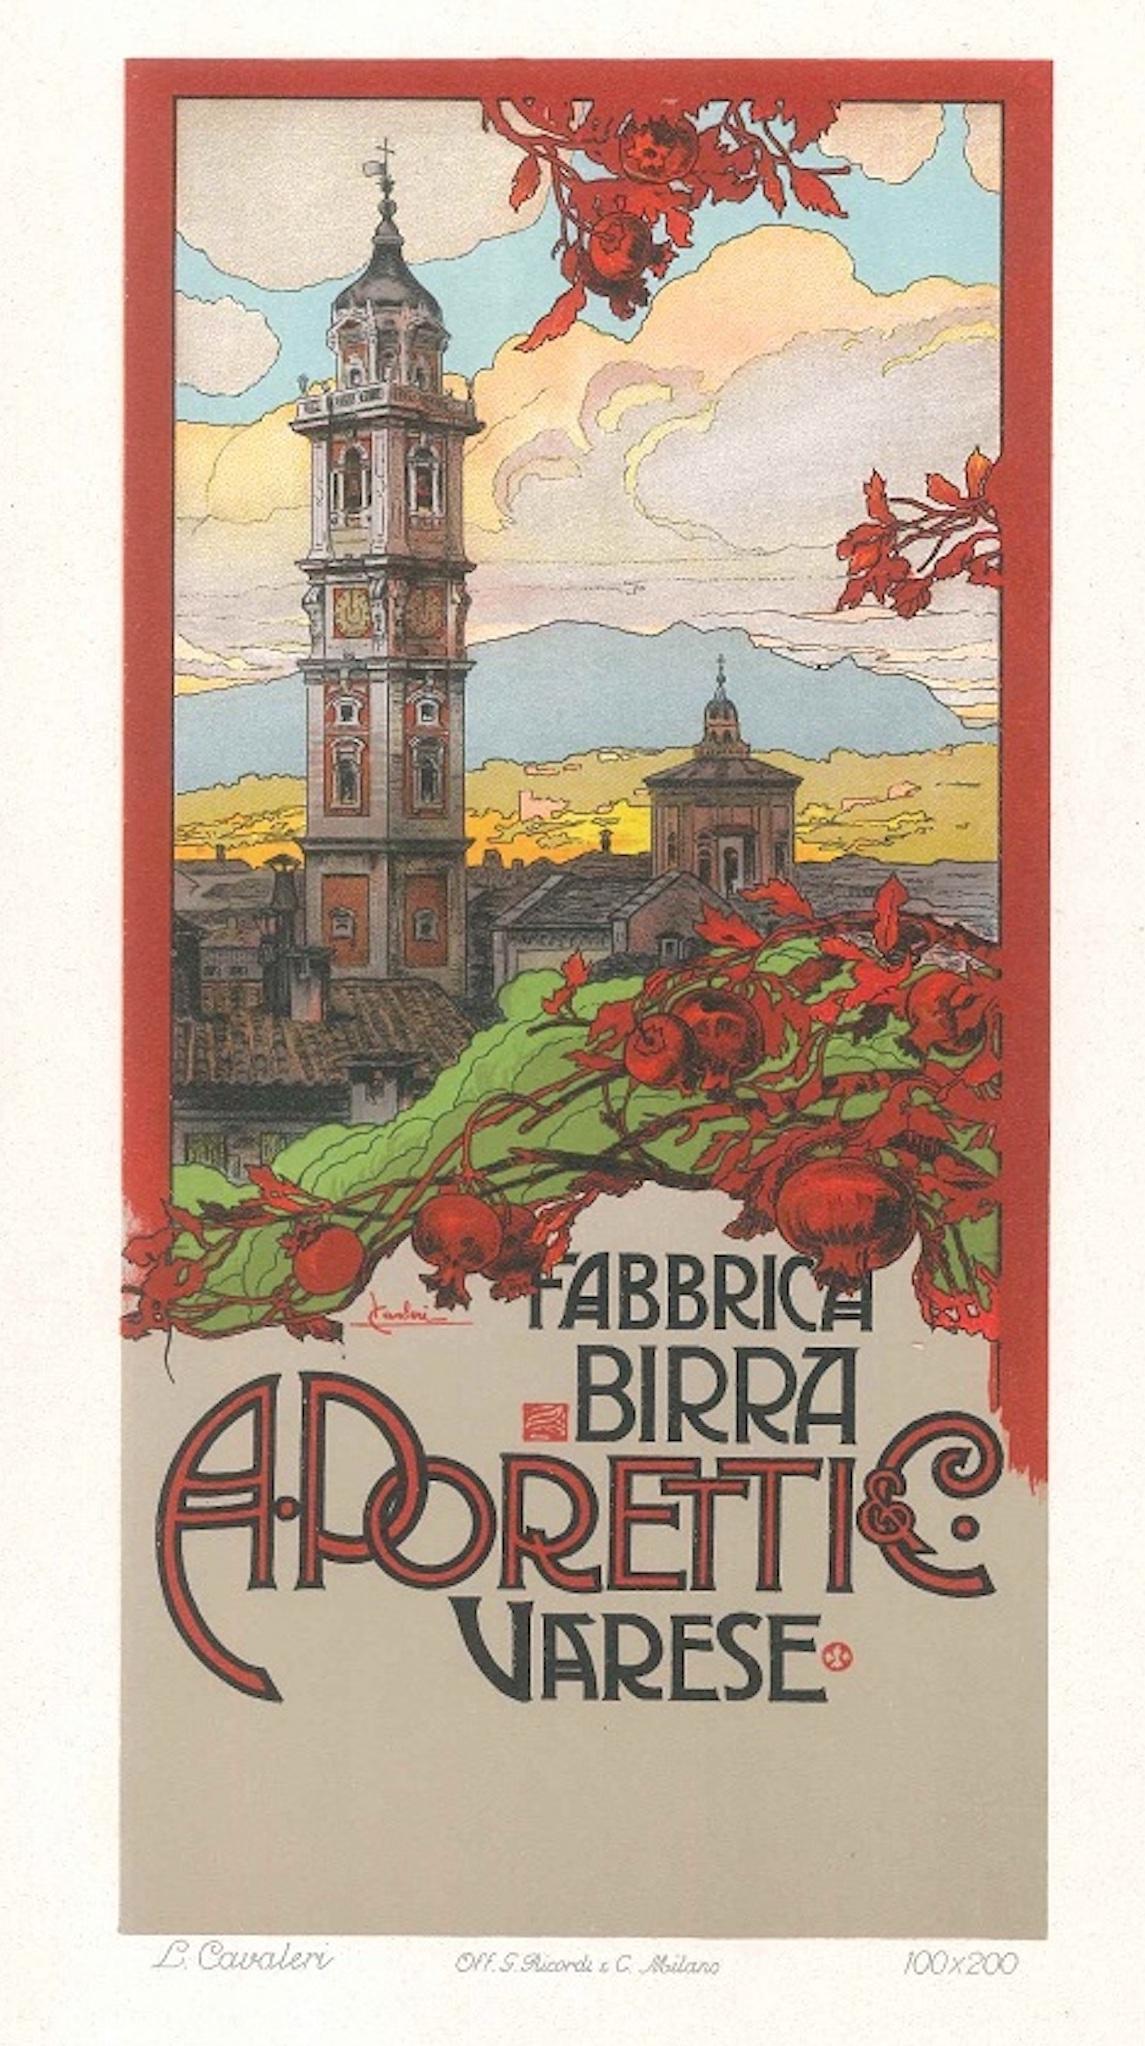 Ludovico Cavalieri Figurative Print - Fabbrica Birra Poretti - Original Lithograph by L. Cavalieri - 1900 ca.